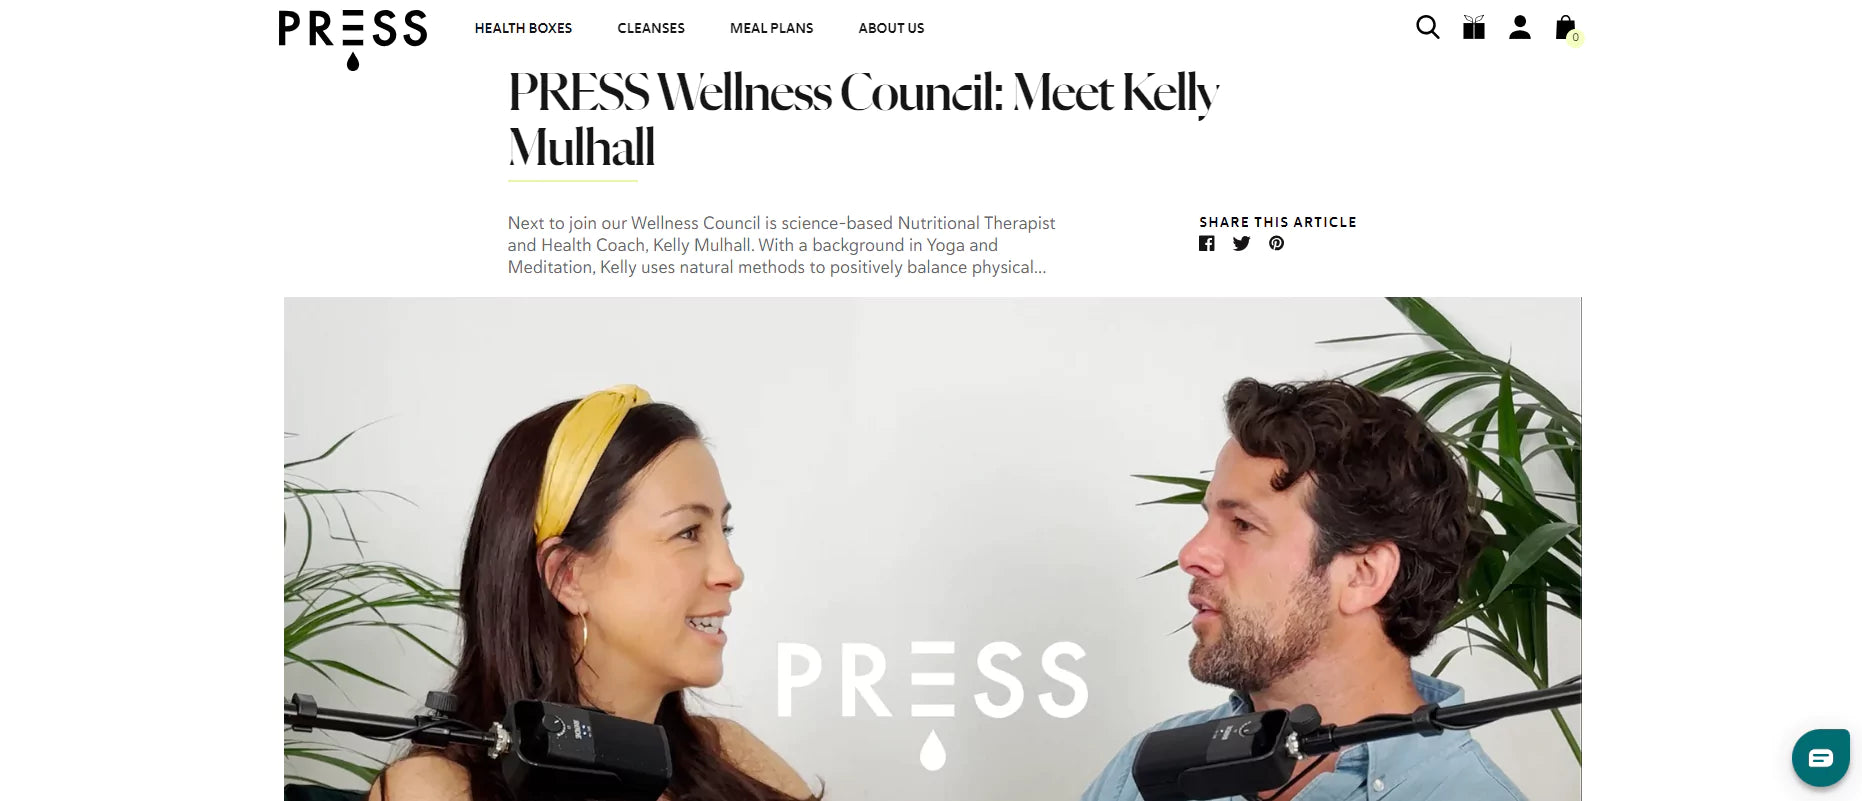 Screenshot of the PRESS Wellness Council: Meet Kelly Mulhall